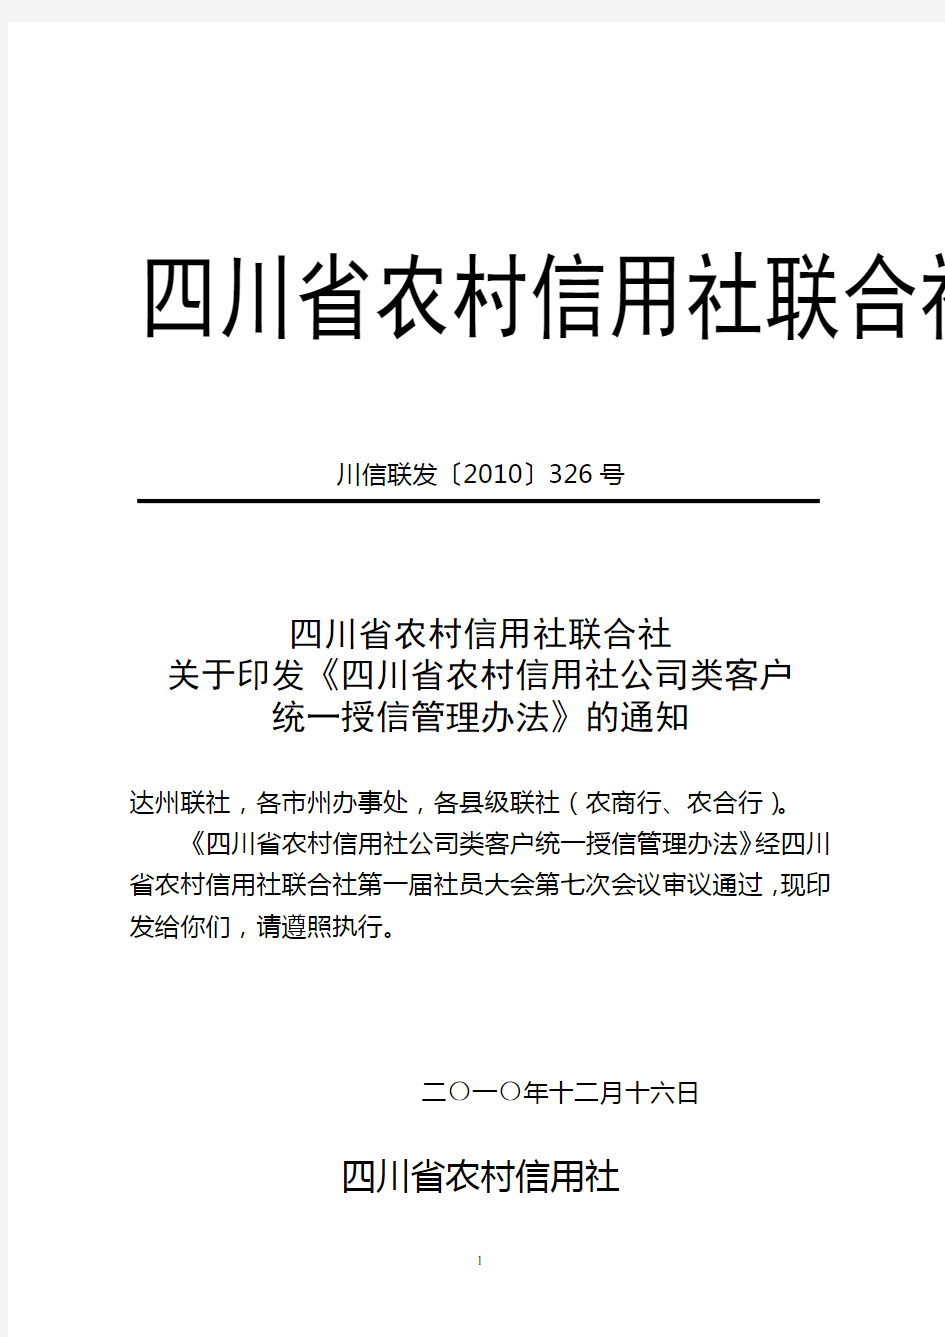 关于印发《四川省农村信用社公司类客户统一授信管理办法》的通知